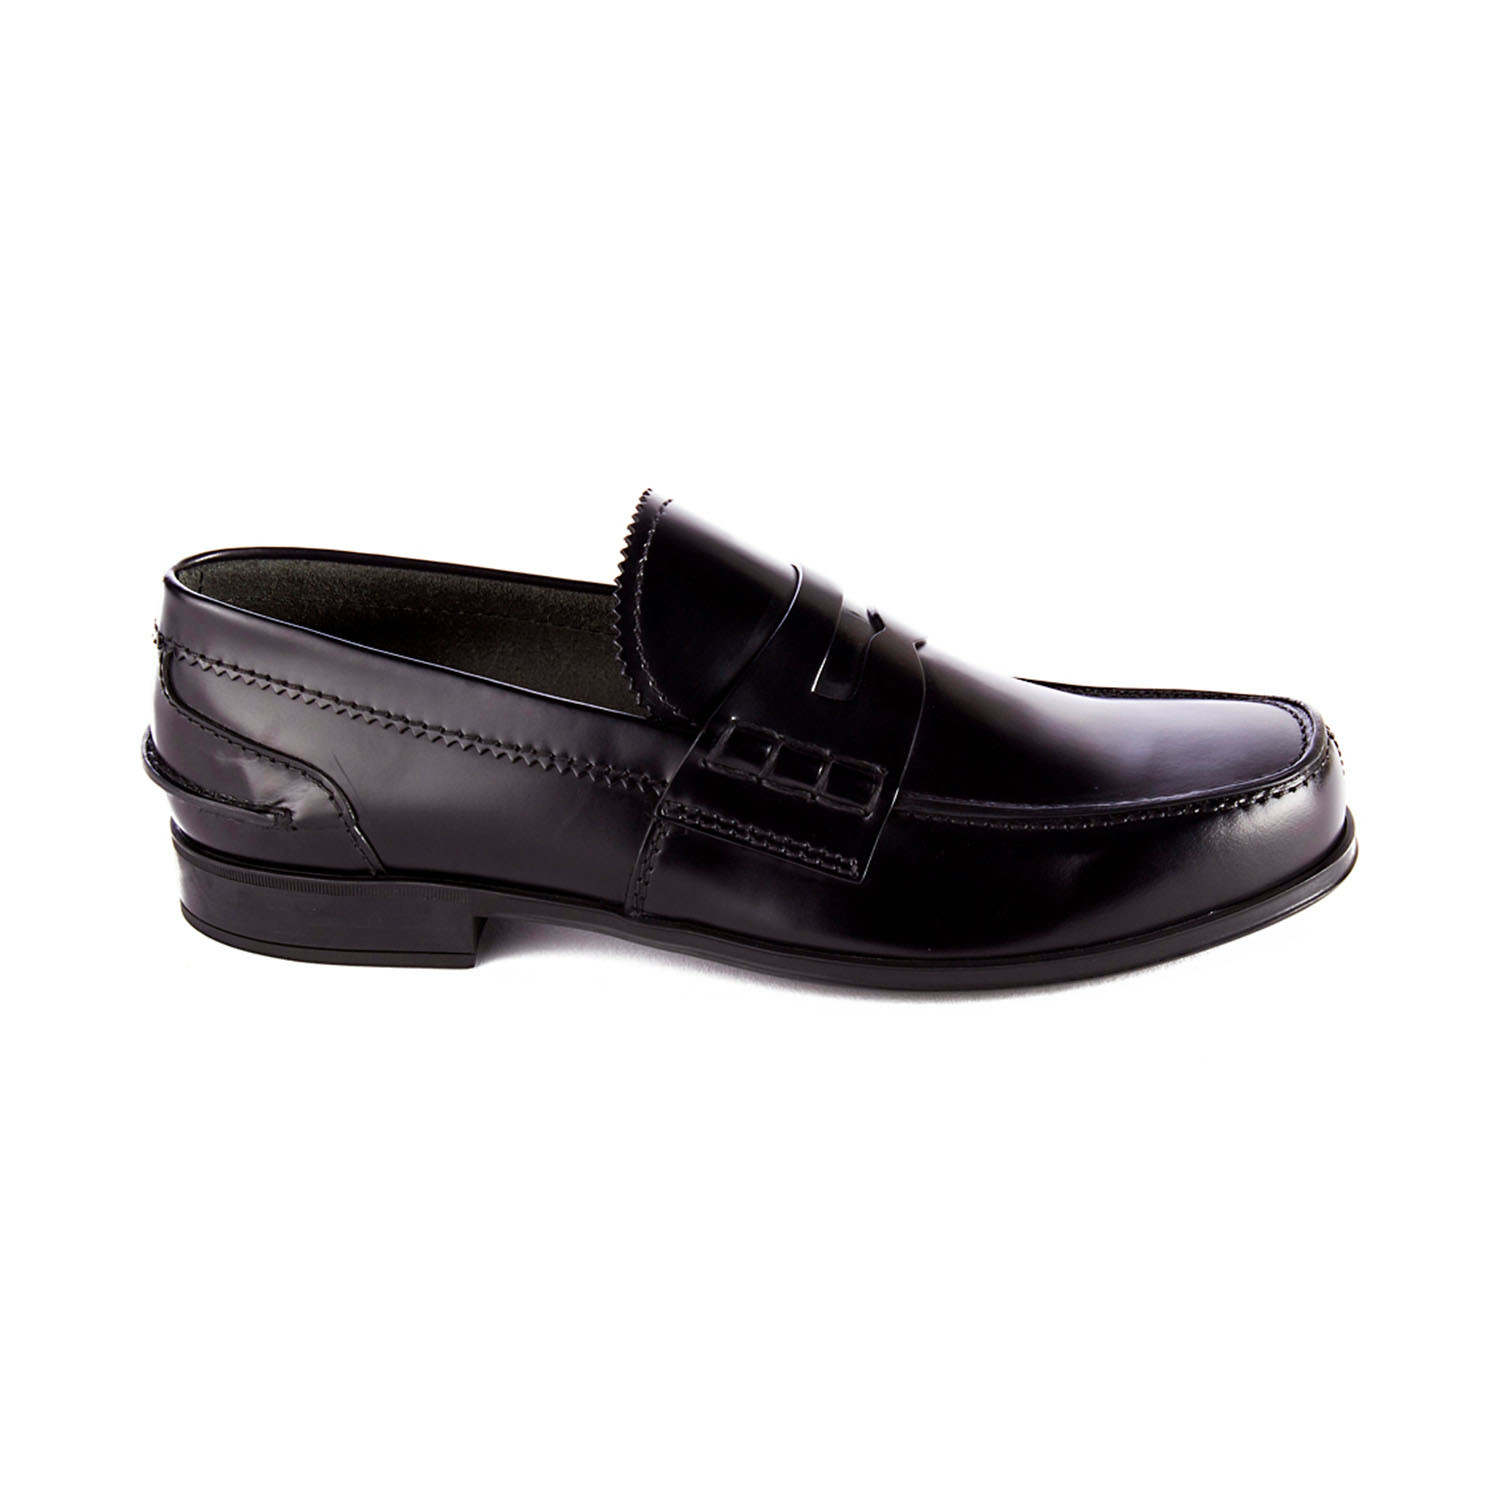 Prada // Brushed Leather Moccasin Loafer Shoes // Black (US: 8) - Men's ...